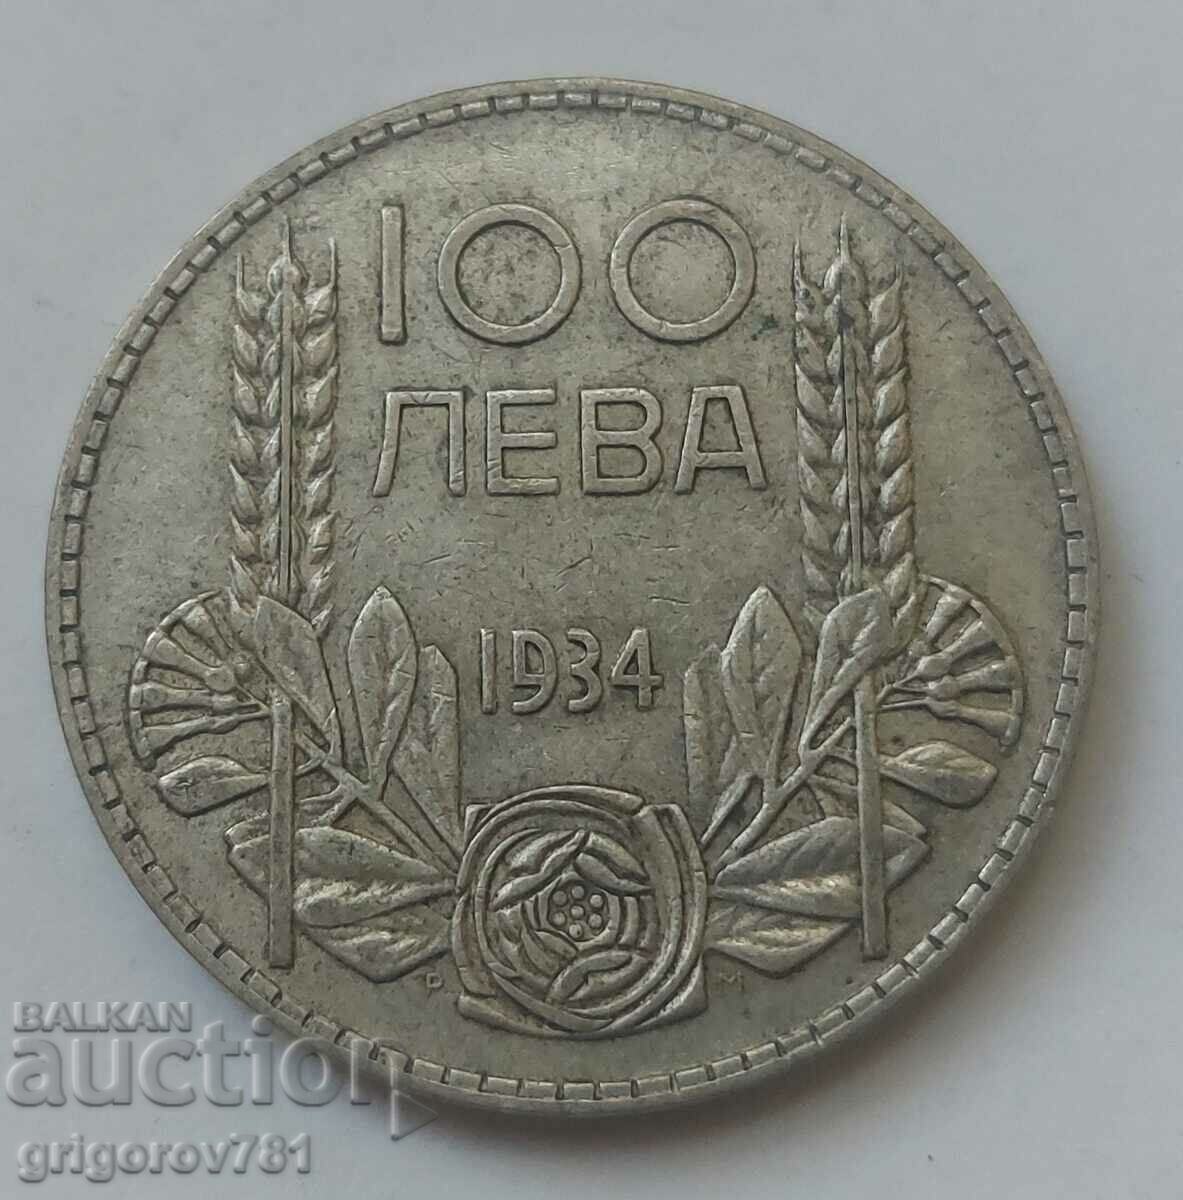 100 leva silver Bulgaria 1934 - silver coin #54